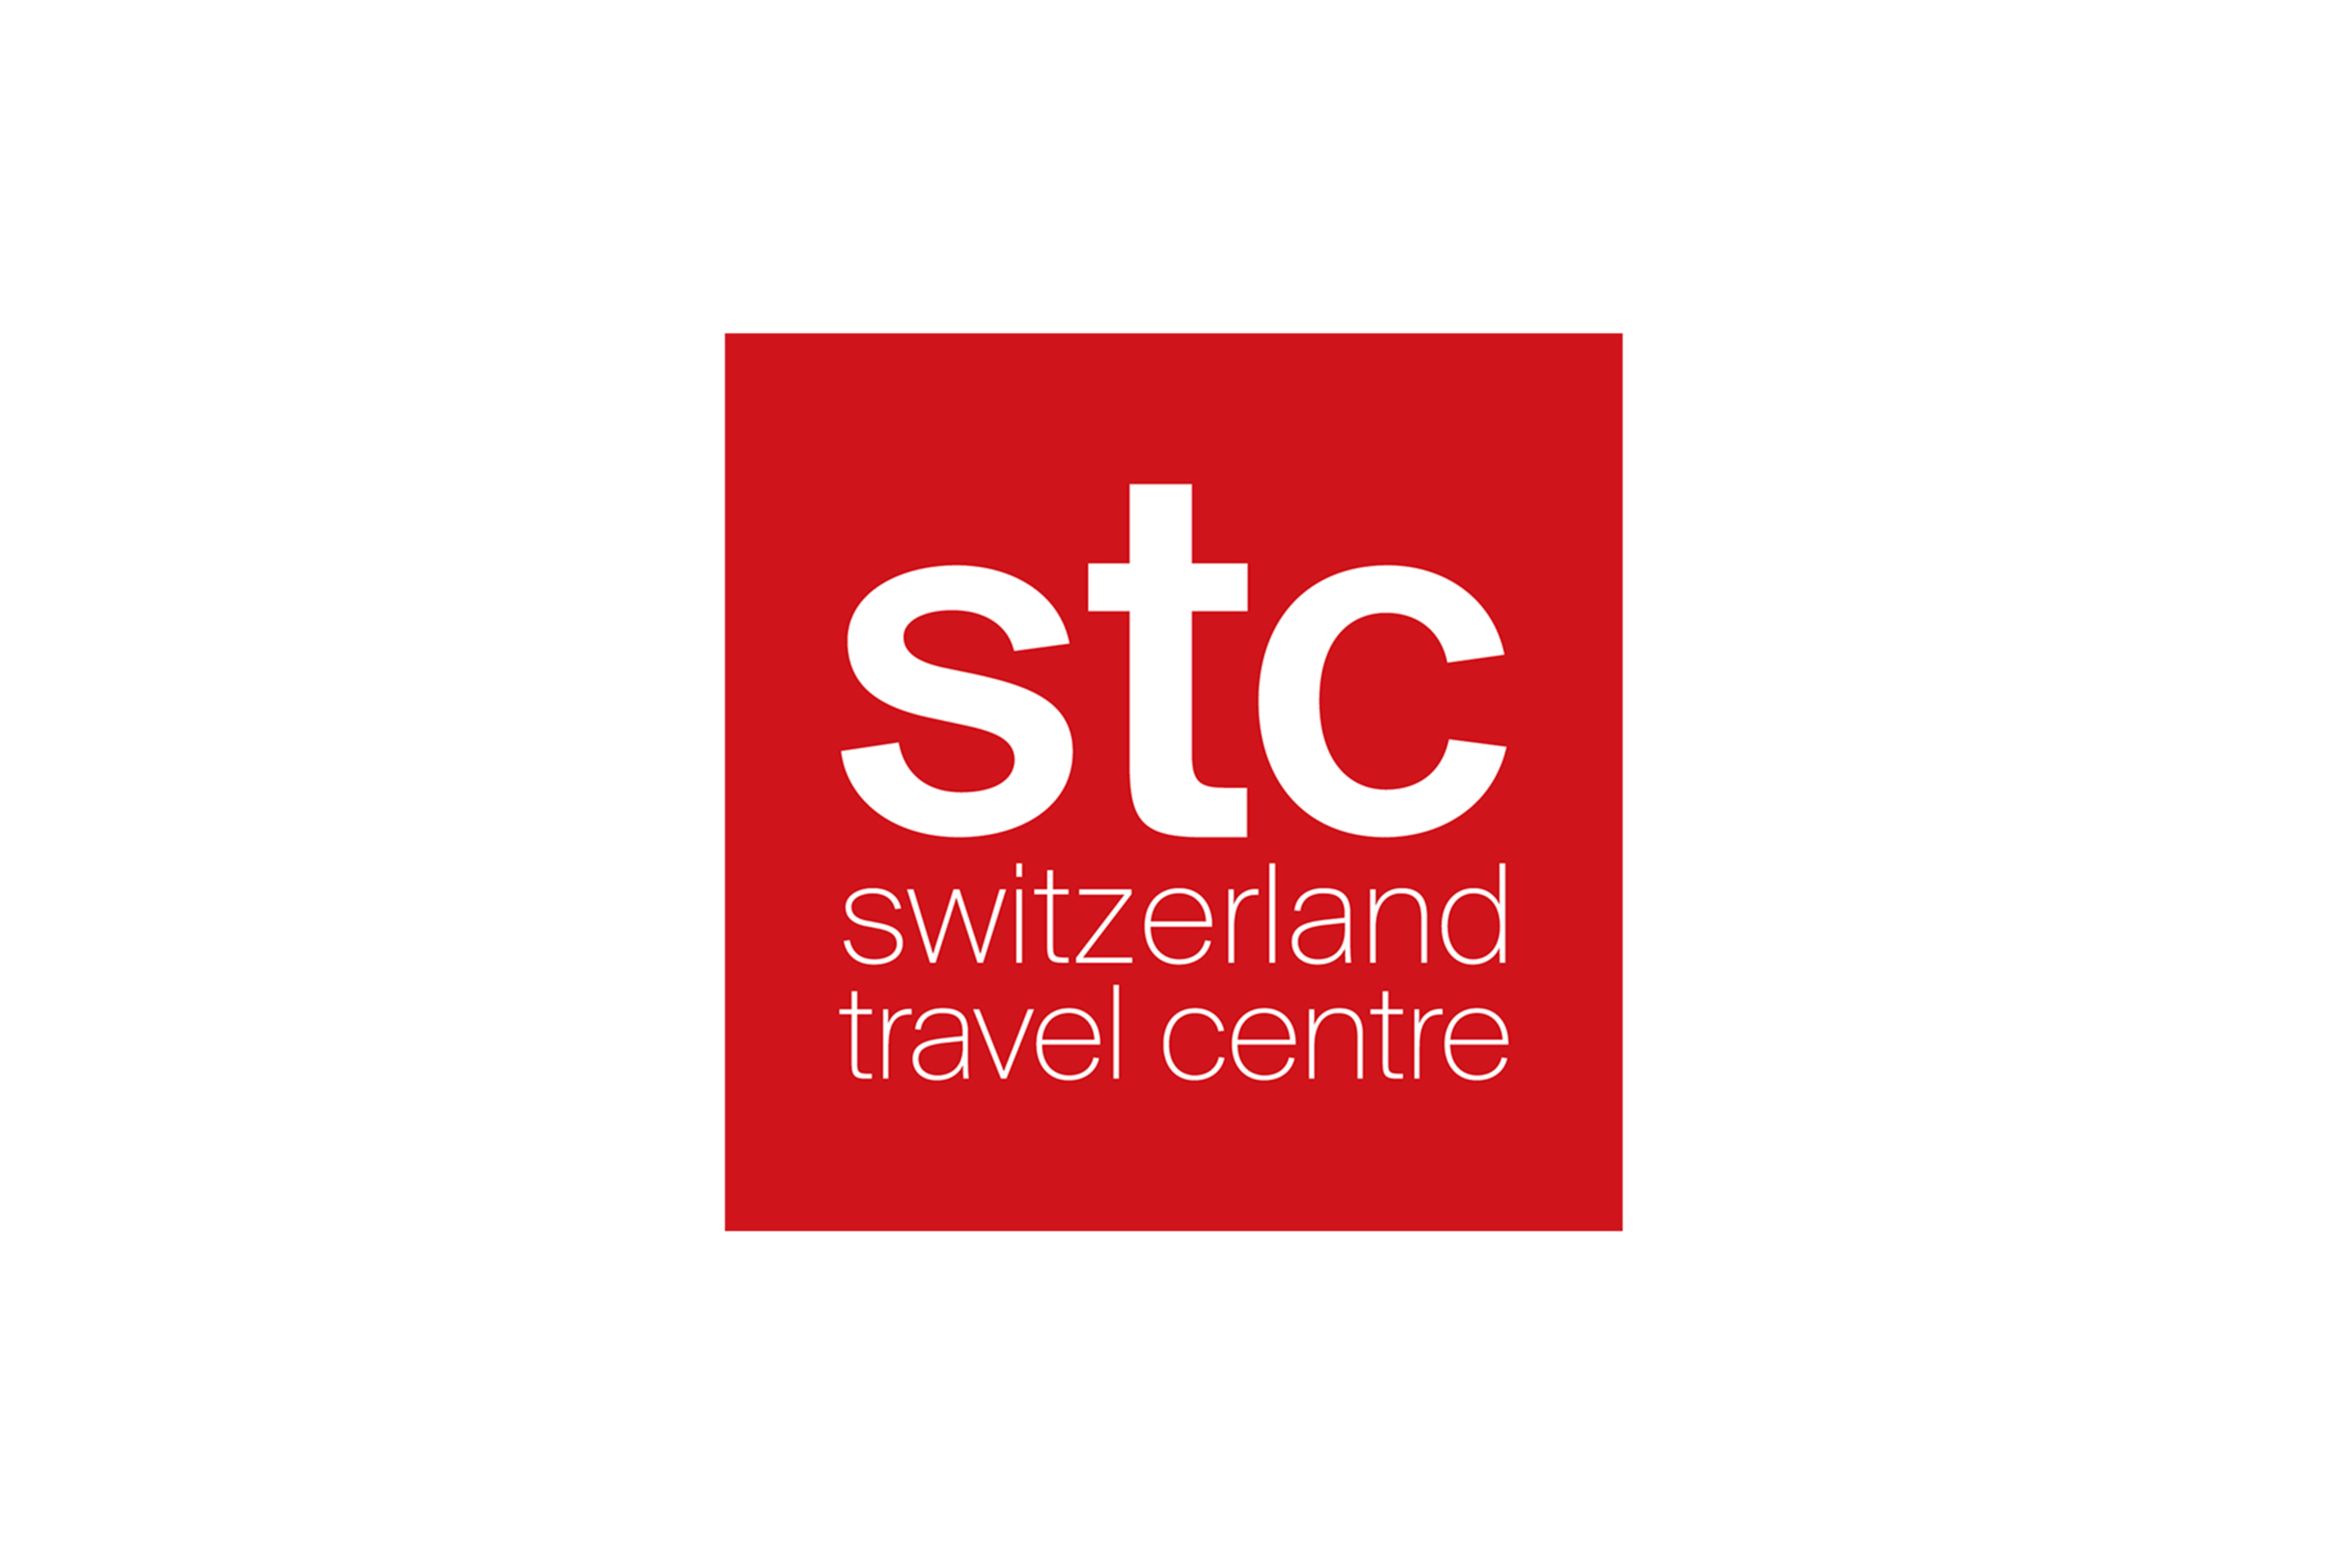 STC logo. Stc group